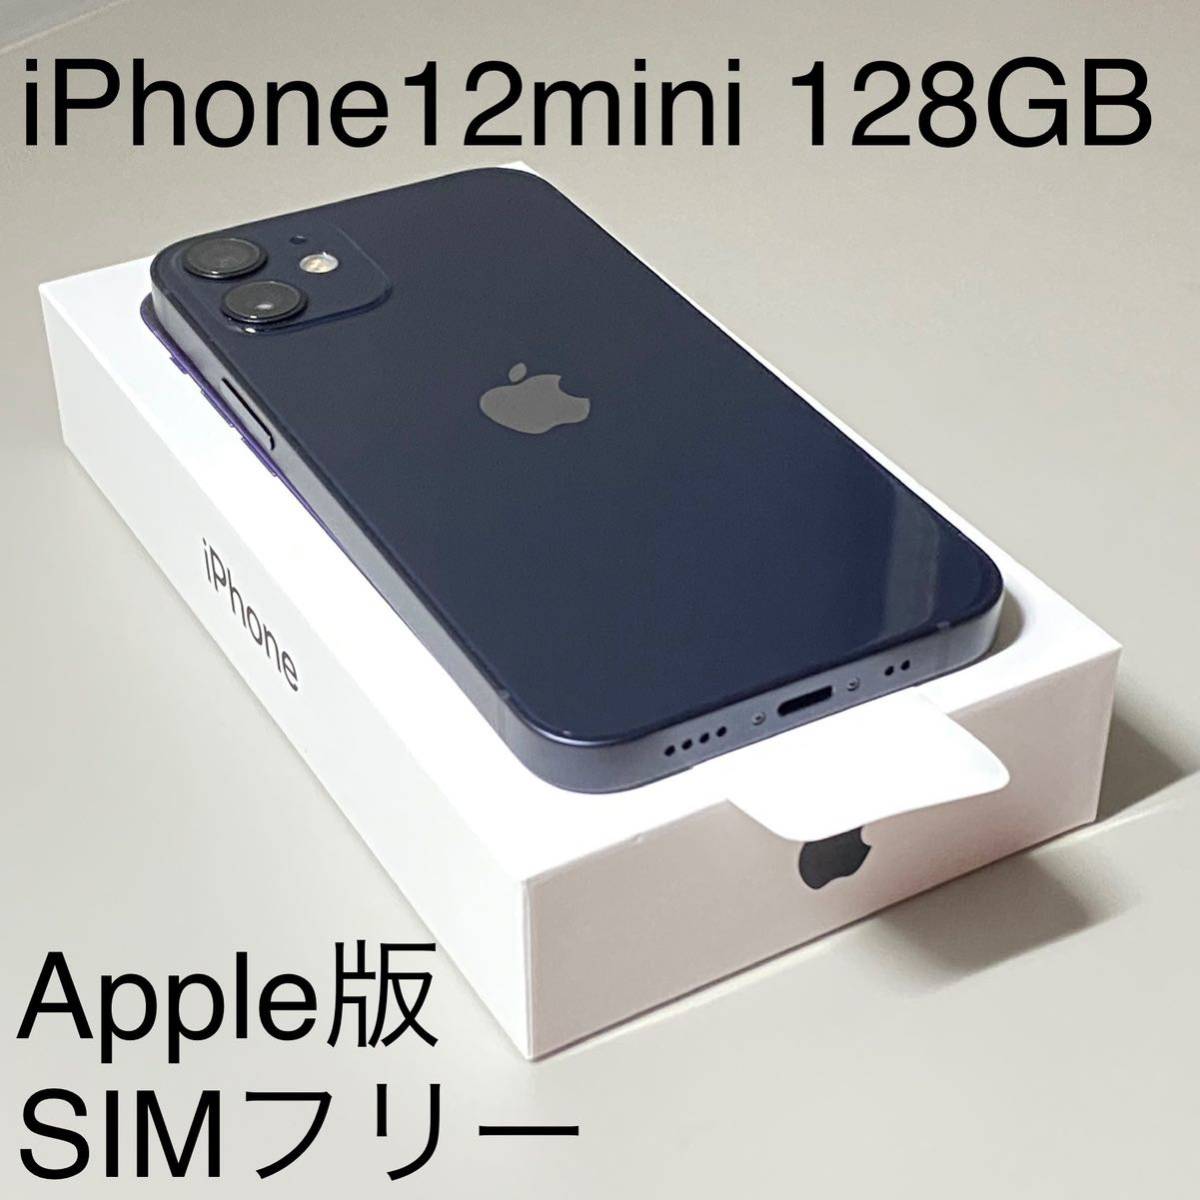 売り込み iPhone 12 mini ブラック128 GB SIMフリー asakusa.sub.jp